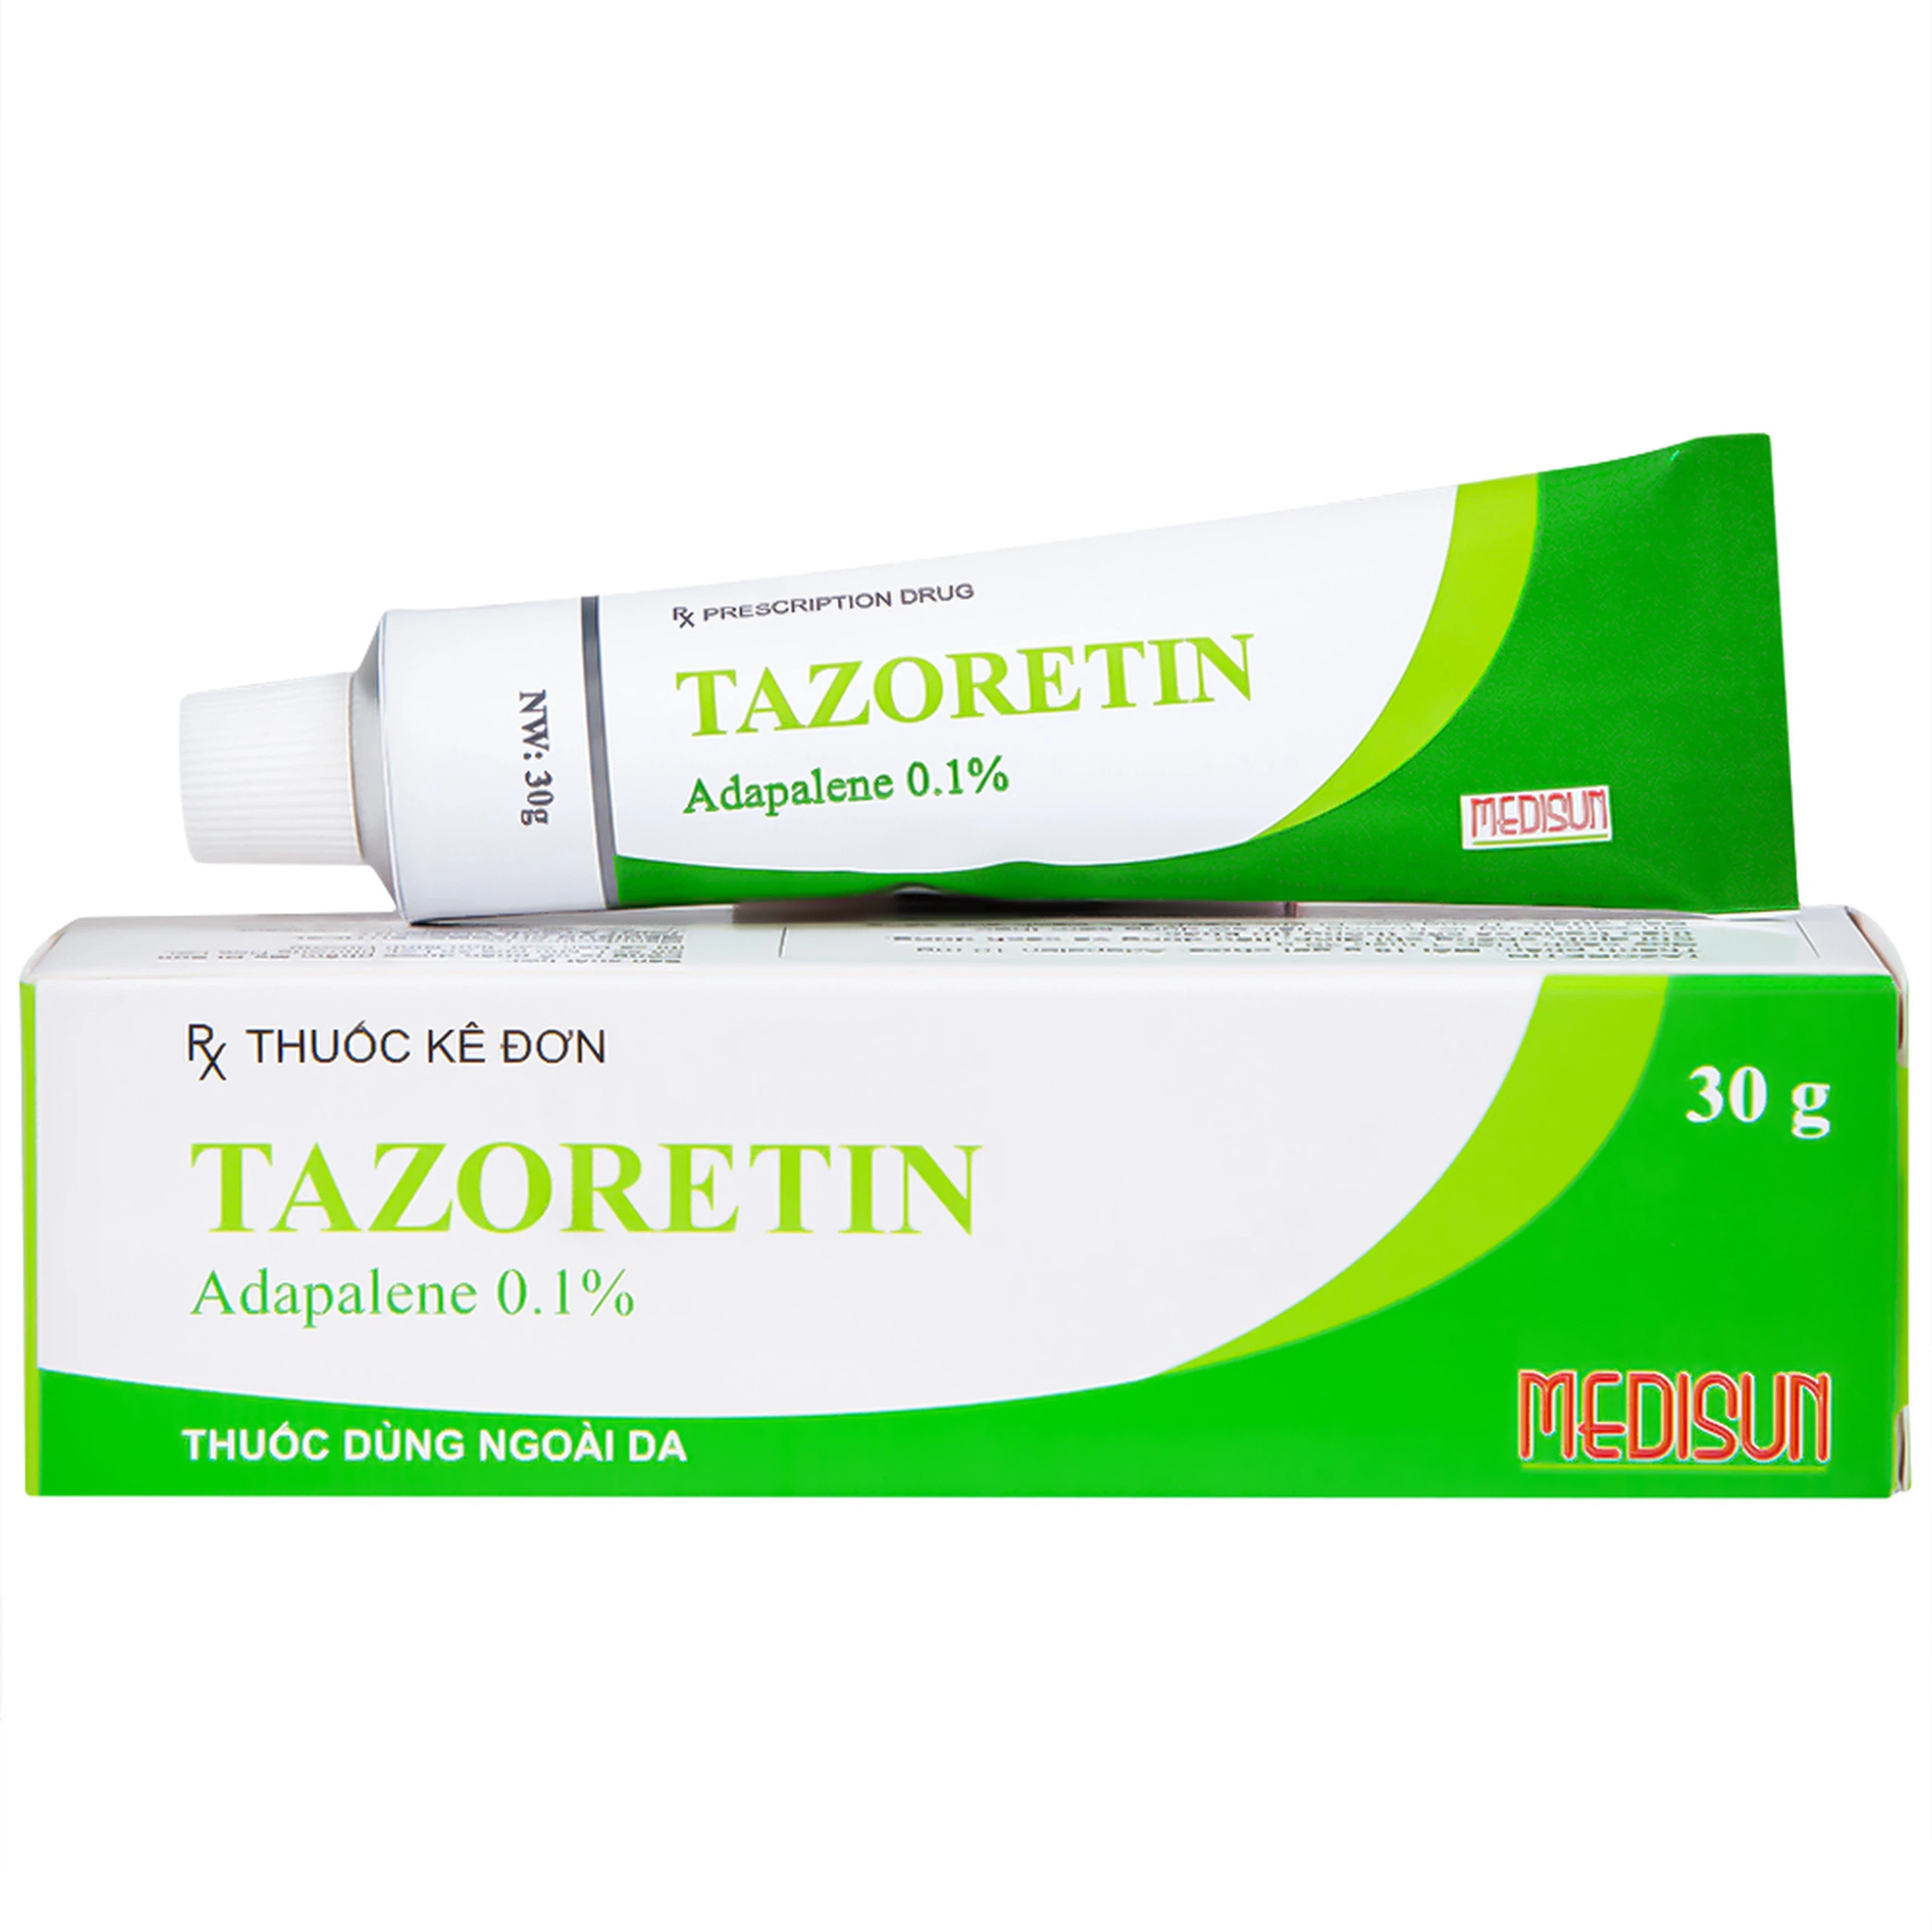 Gel bôi ngoài da Tazoretin điều trị mụn trứng cá vừa và nhẹ (30g) 